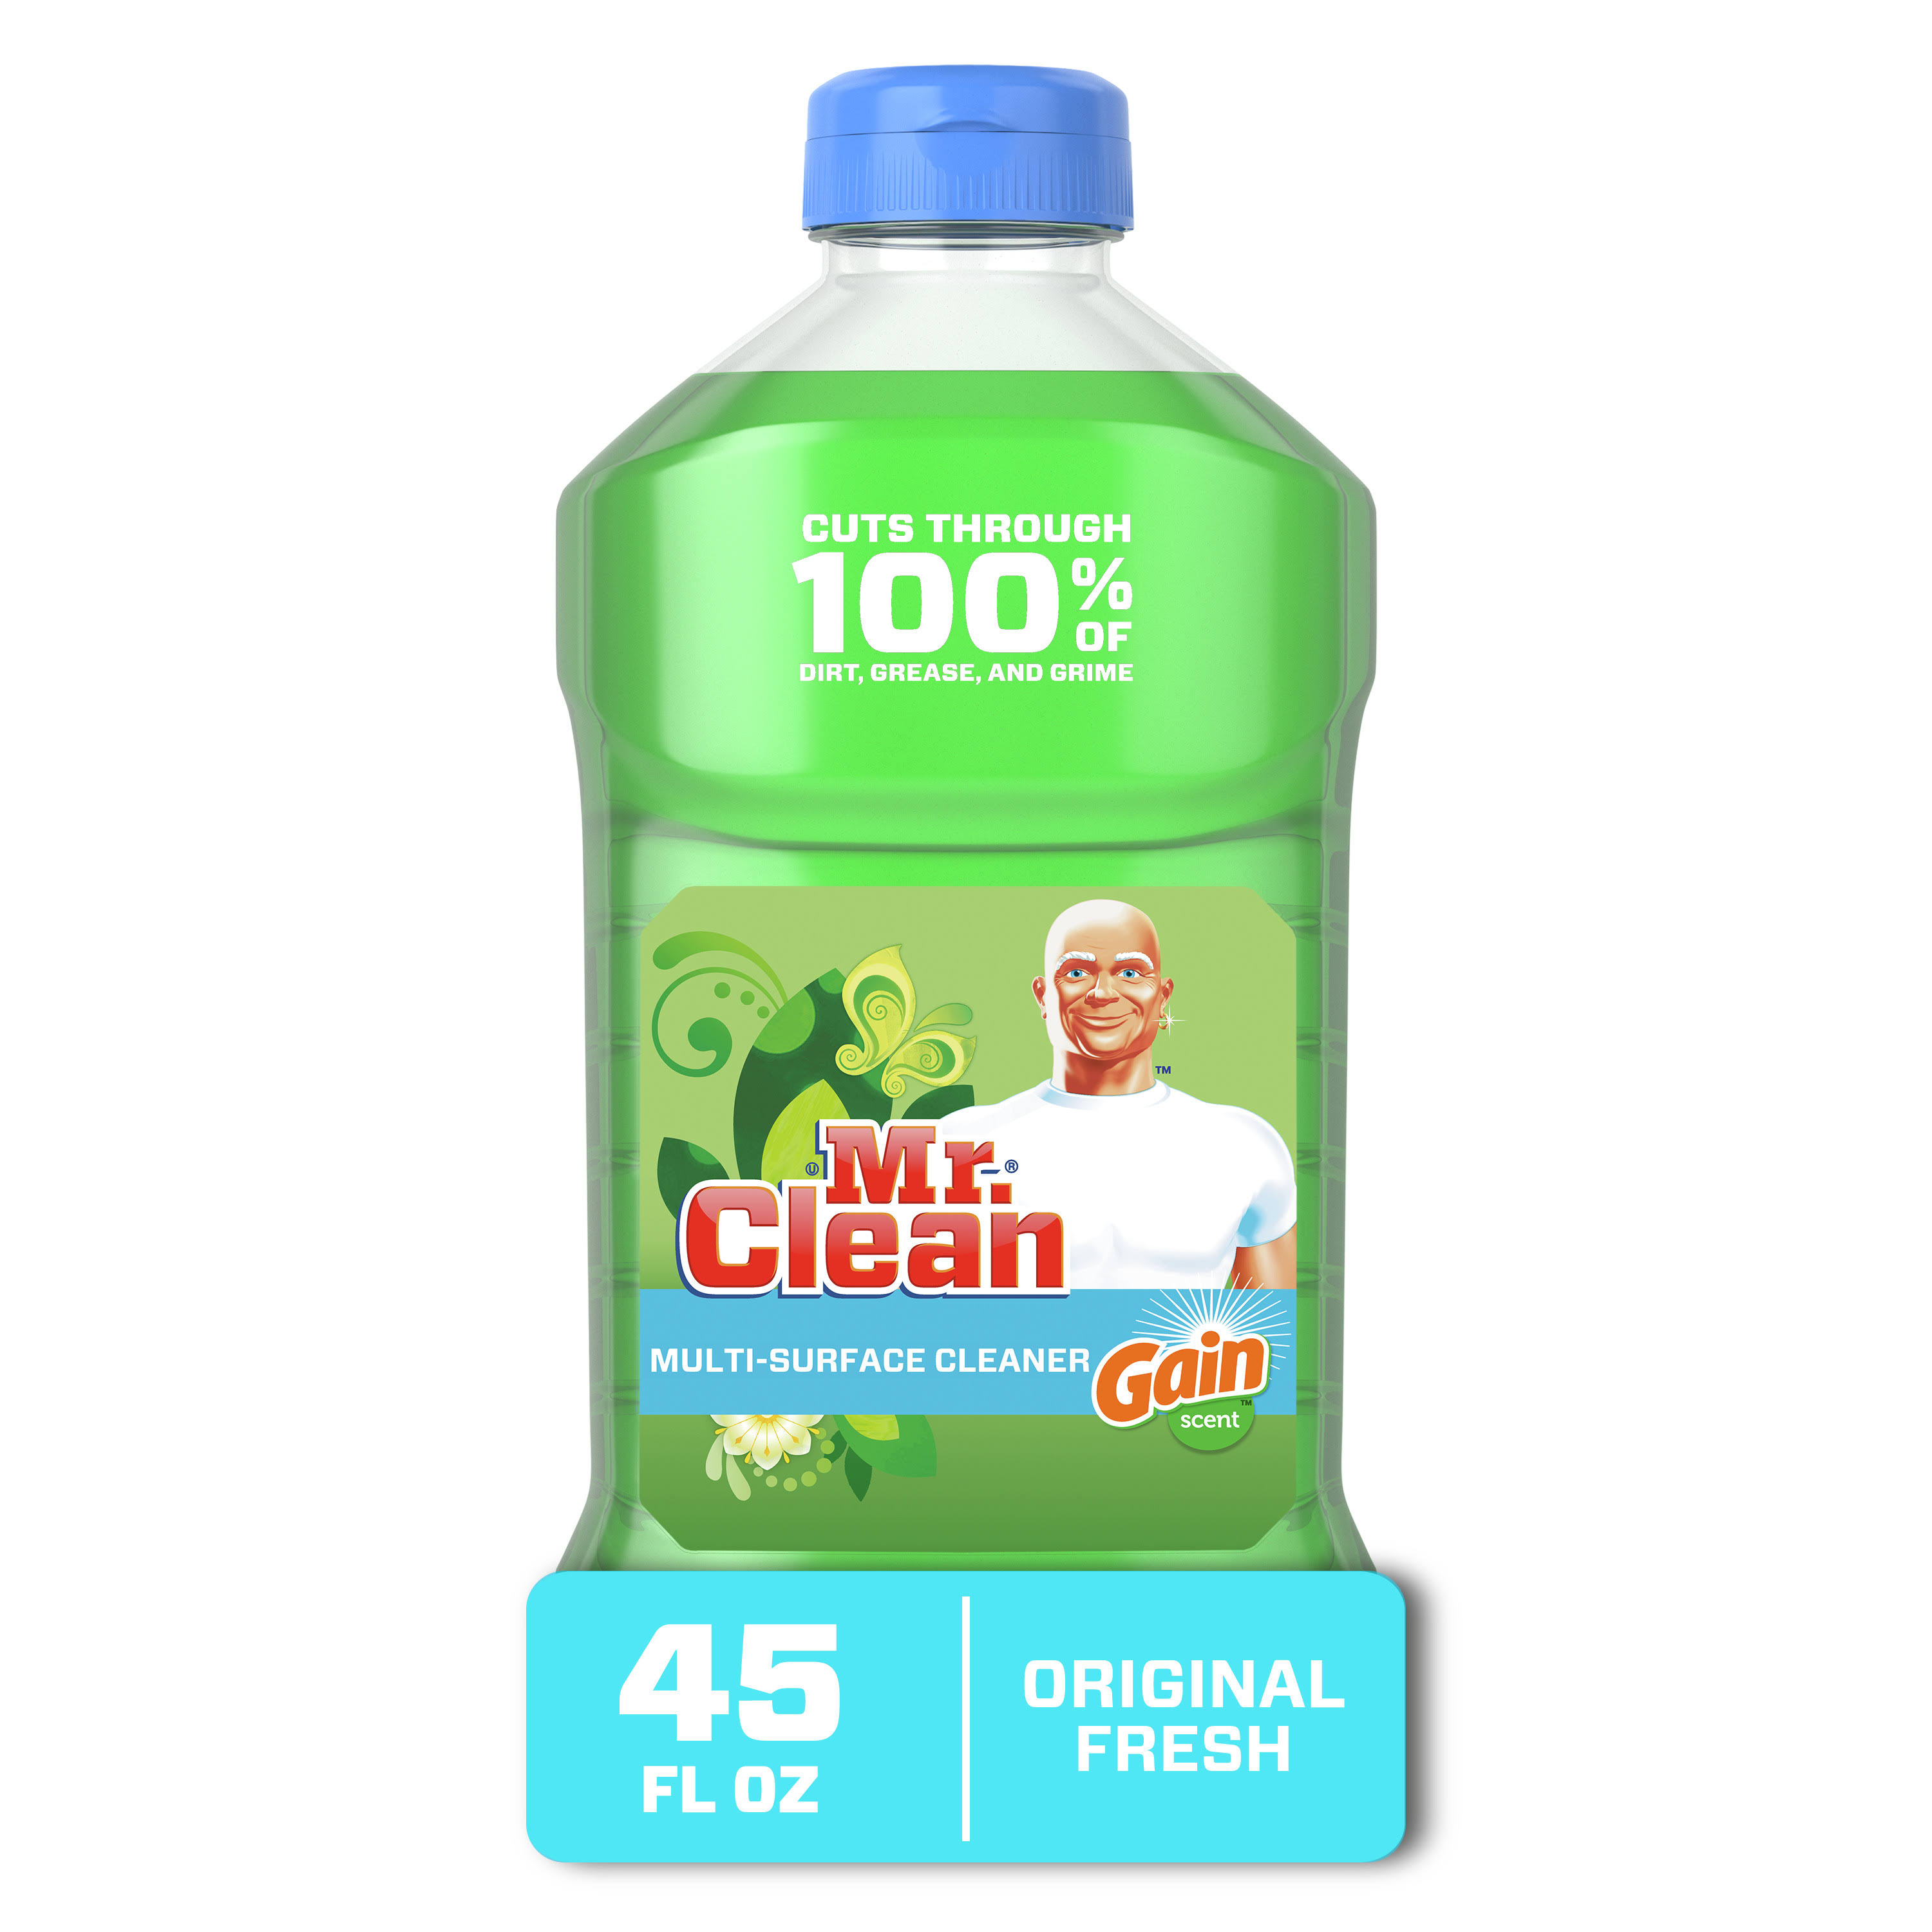 Mr. Clean Multi-Surface Cleaner, Gain Scent Original Fresh - 1.40 qt